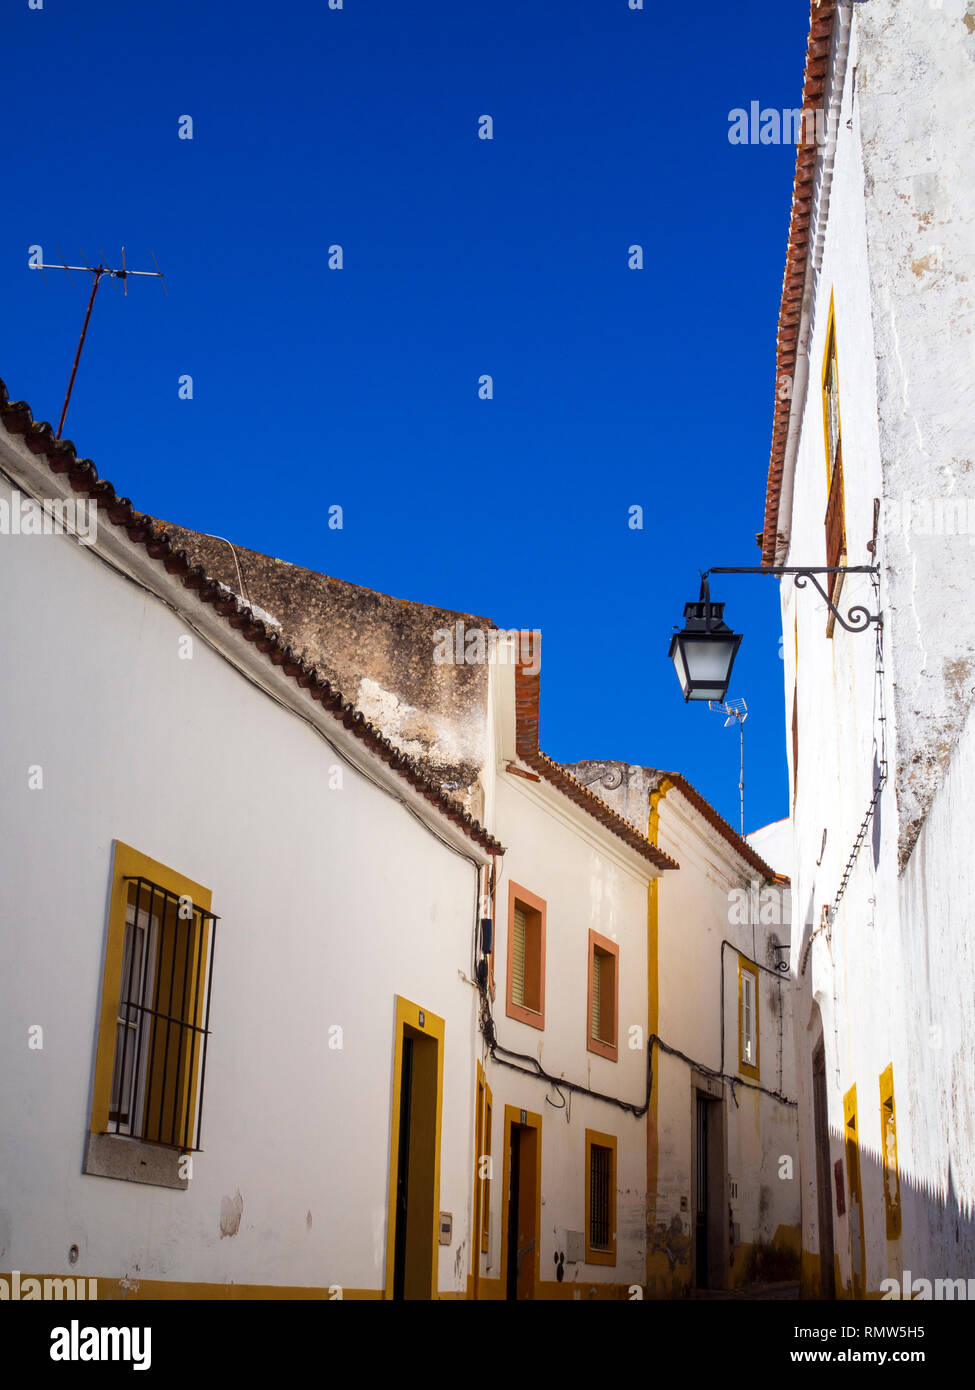 Eine Straßenszene in Evora, eine römische Stadt und Hauptstadt der Provinz Alentejo, Portugal. Stockfoto